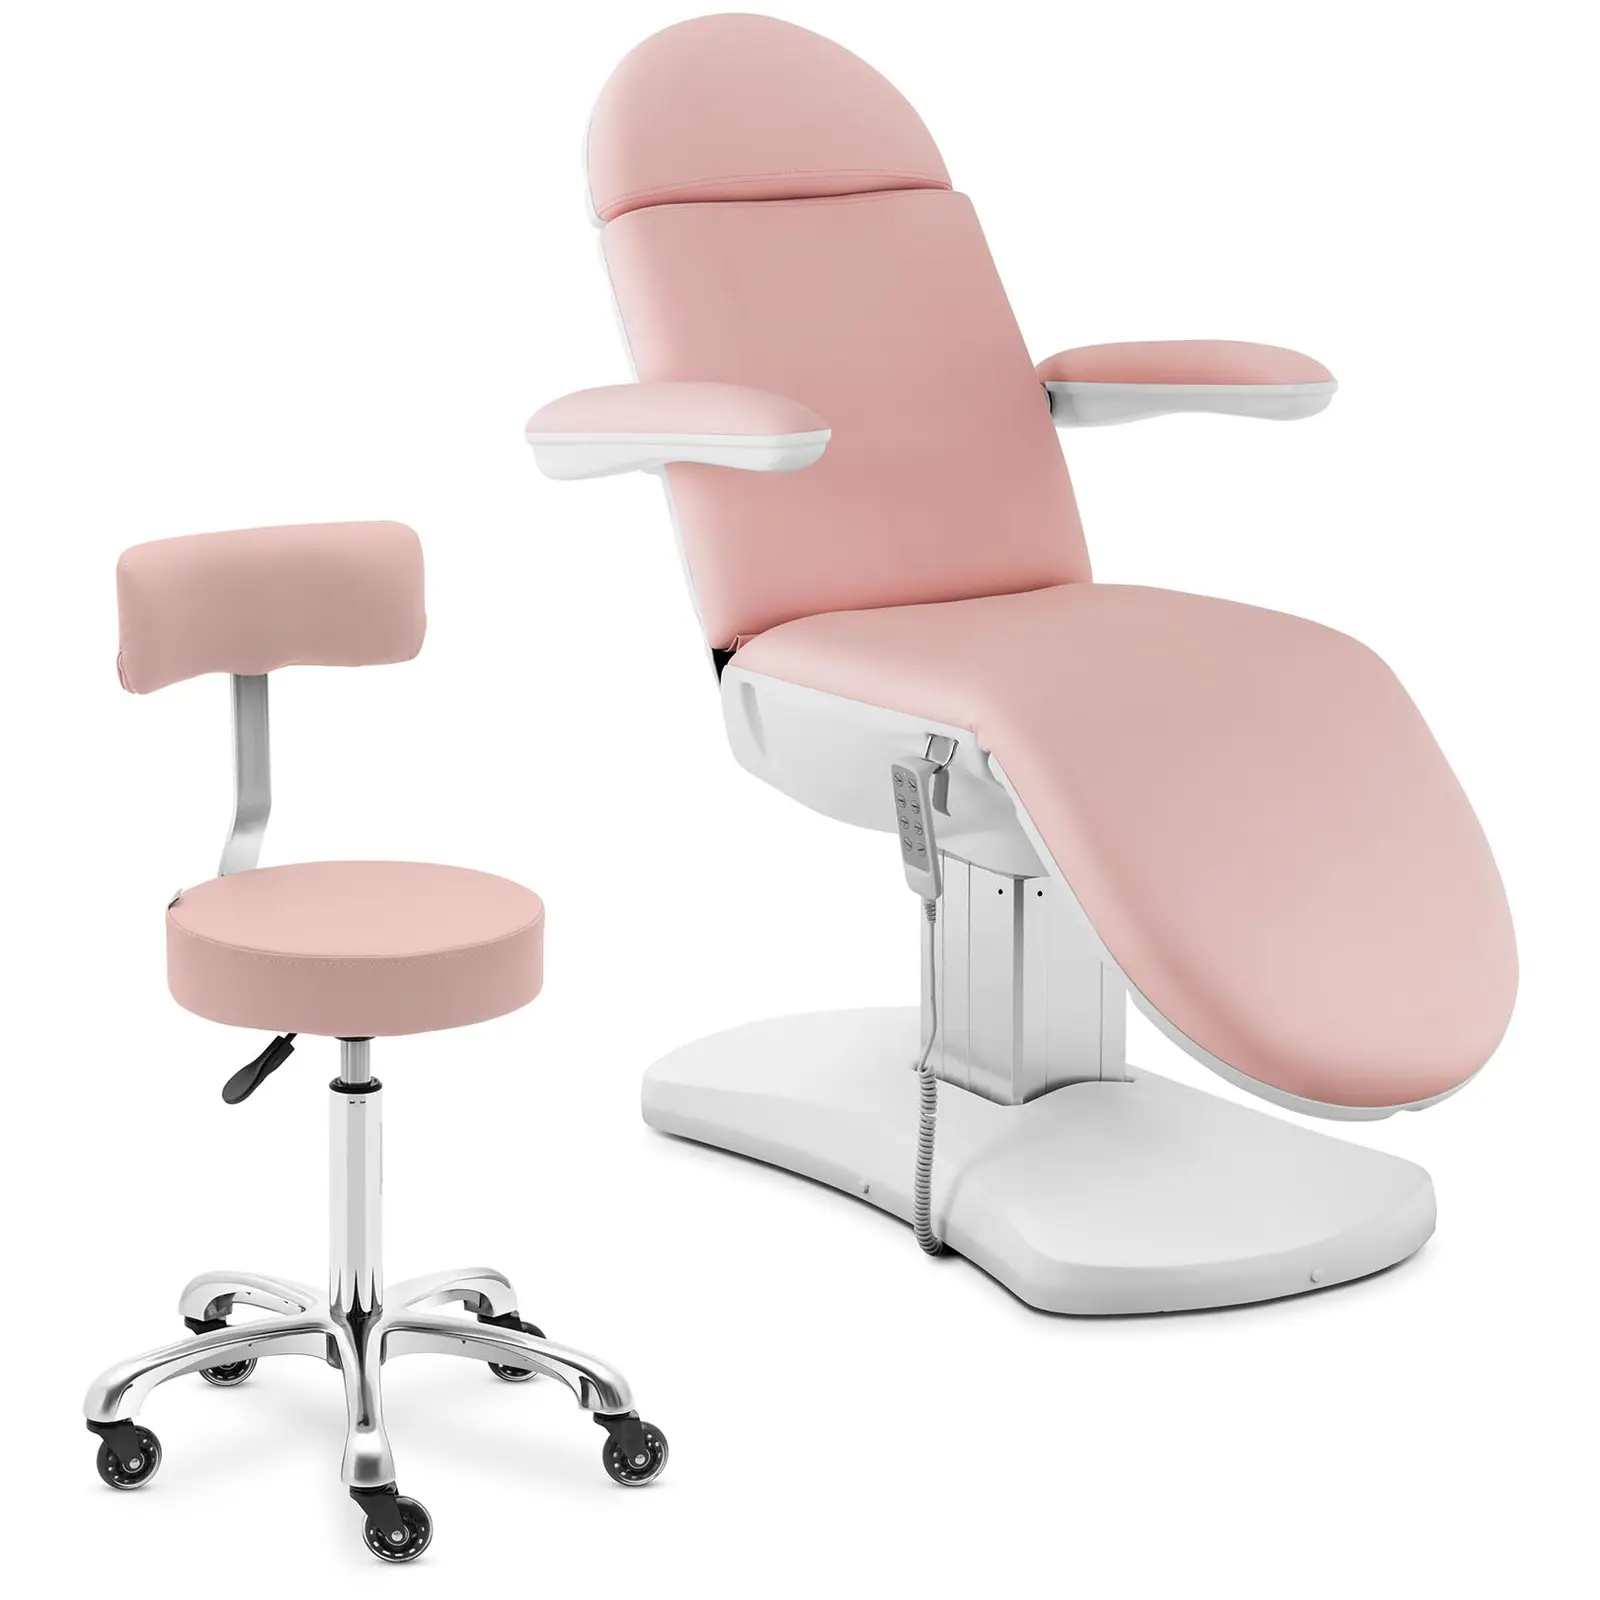 Behandlingsstol & rullpall med ryggstöd - Rosa, vit